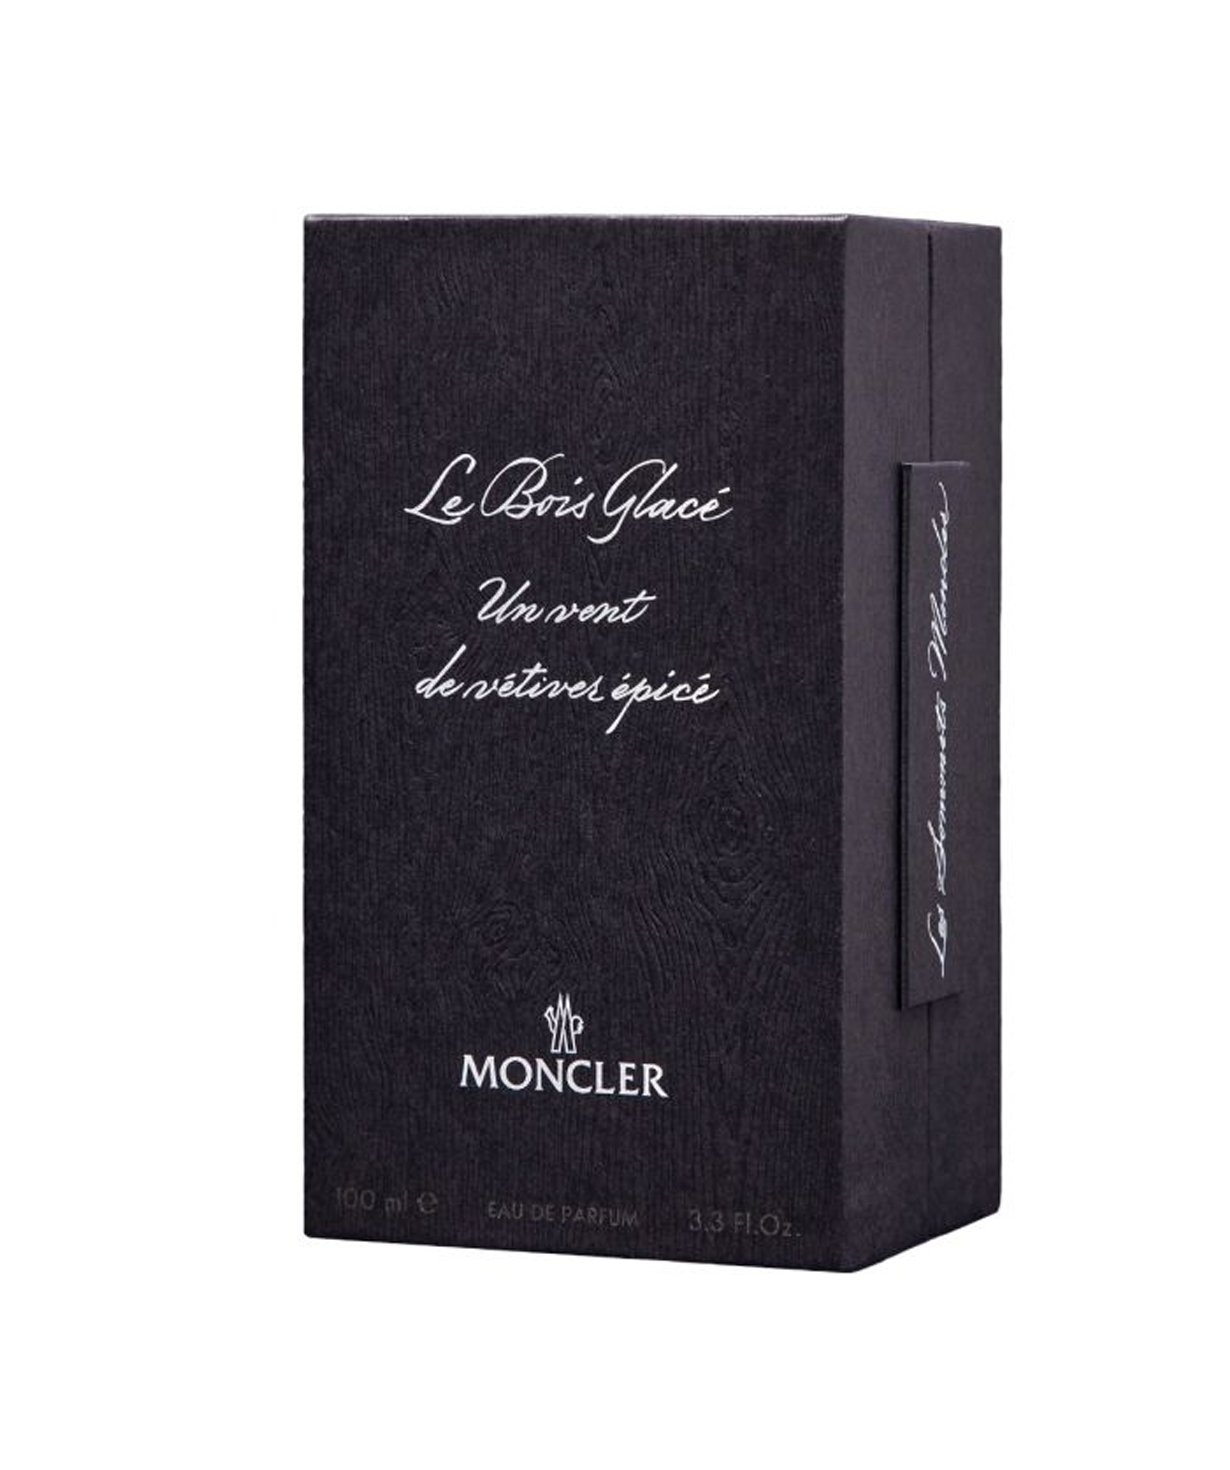 Perfume «Moncler» Le Bois Glacé, unisex, 100 ml